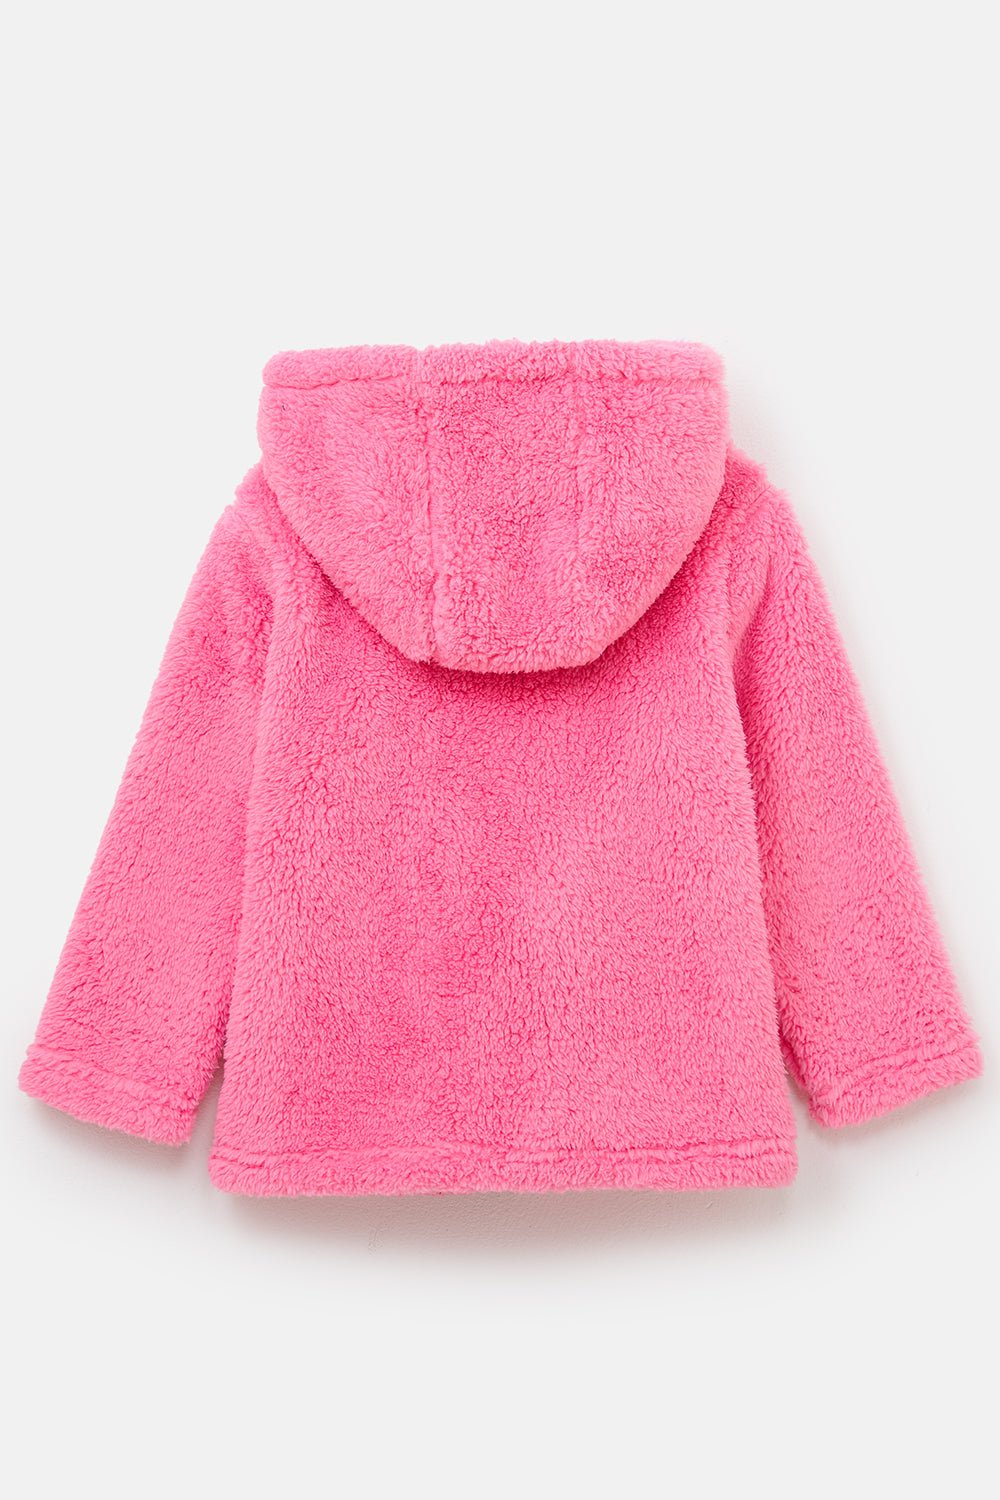 Sandee Rain Boutique - Berber Fleece Cosy Top in White/Pink